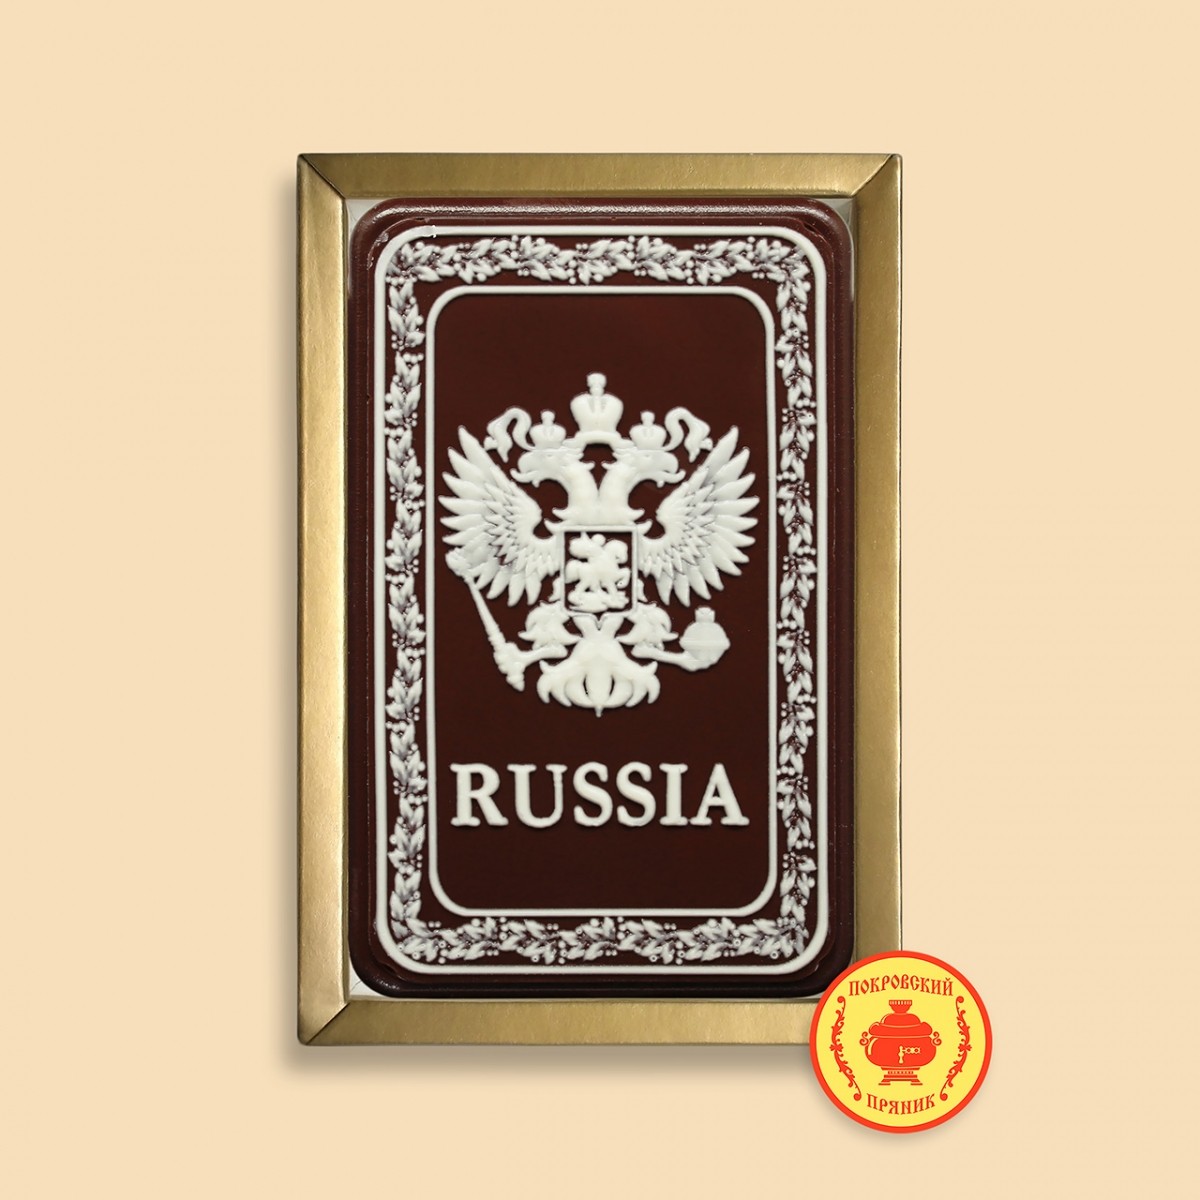 Герб "Russia" в рамке (160 гр.)